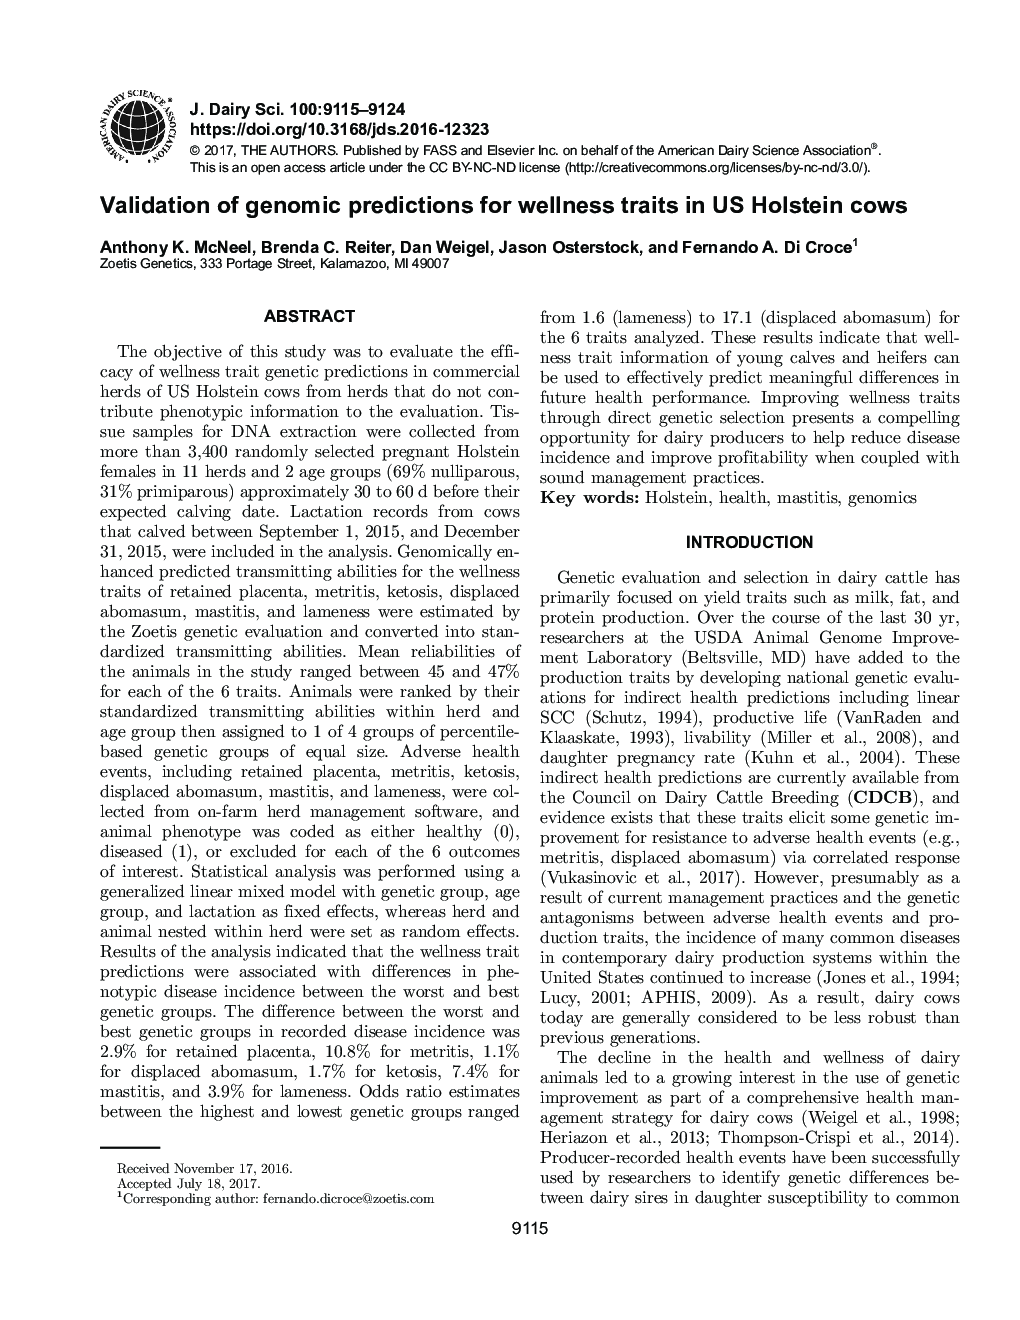 اعتبار پیش بینی های ژنومی برای صفات سلامتی در گاوهای ایالات متحده هولشتاین 